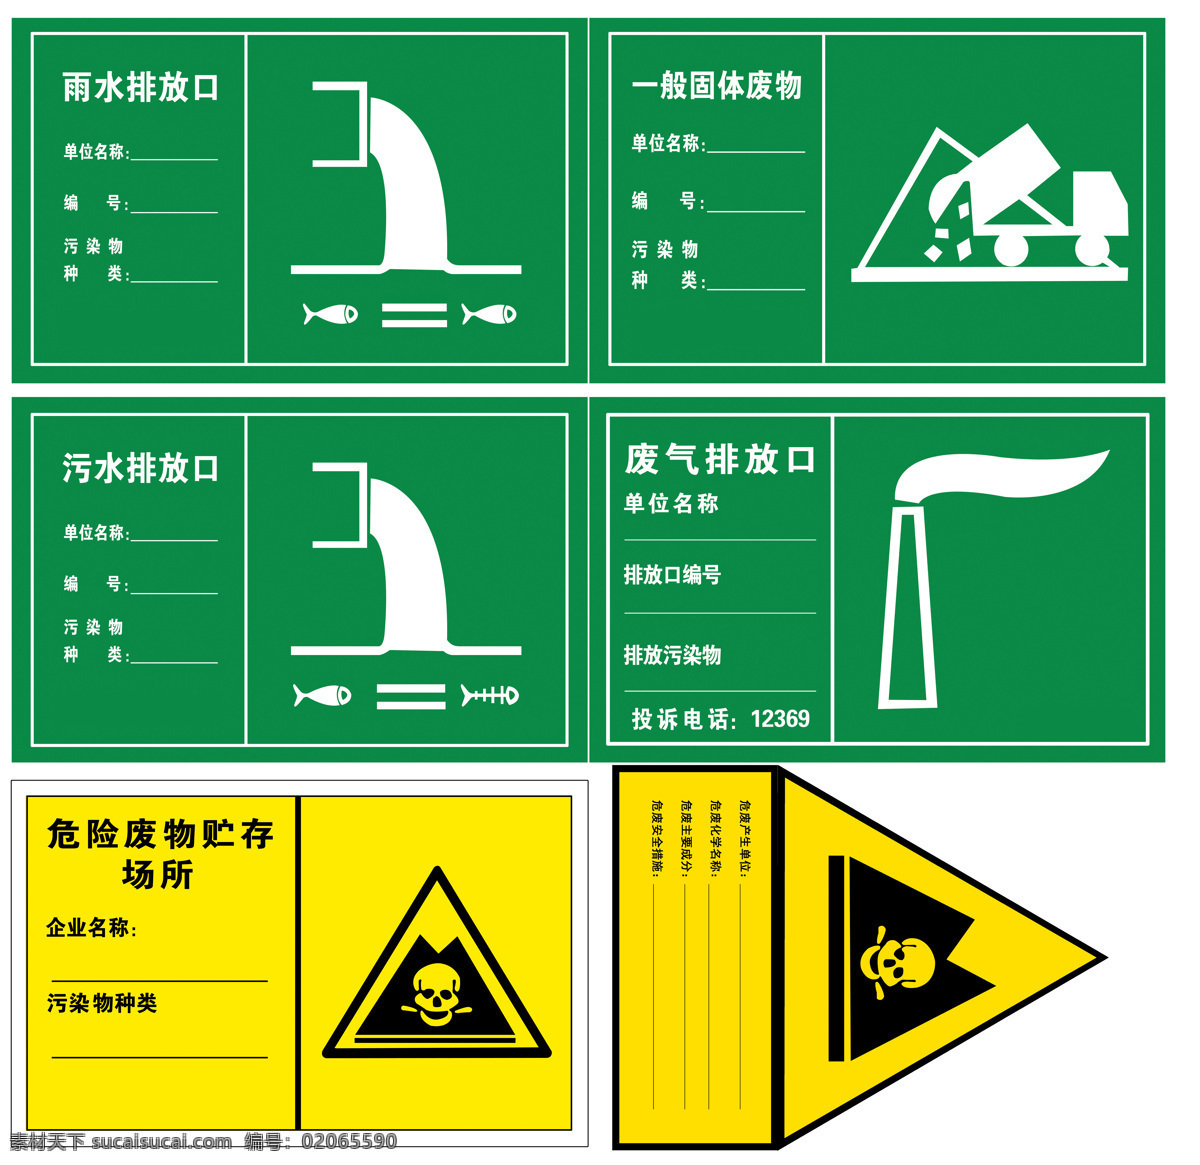 环评 组图 直接 打印稿 雨水 污水 固废 废气 危险物贮存 警示牌 标志版 安全检查 环保